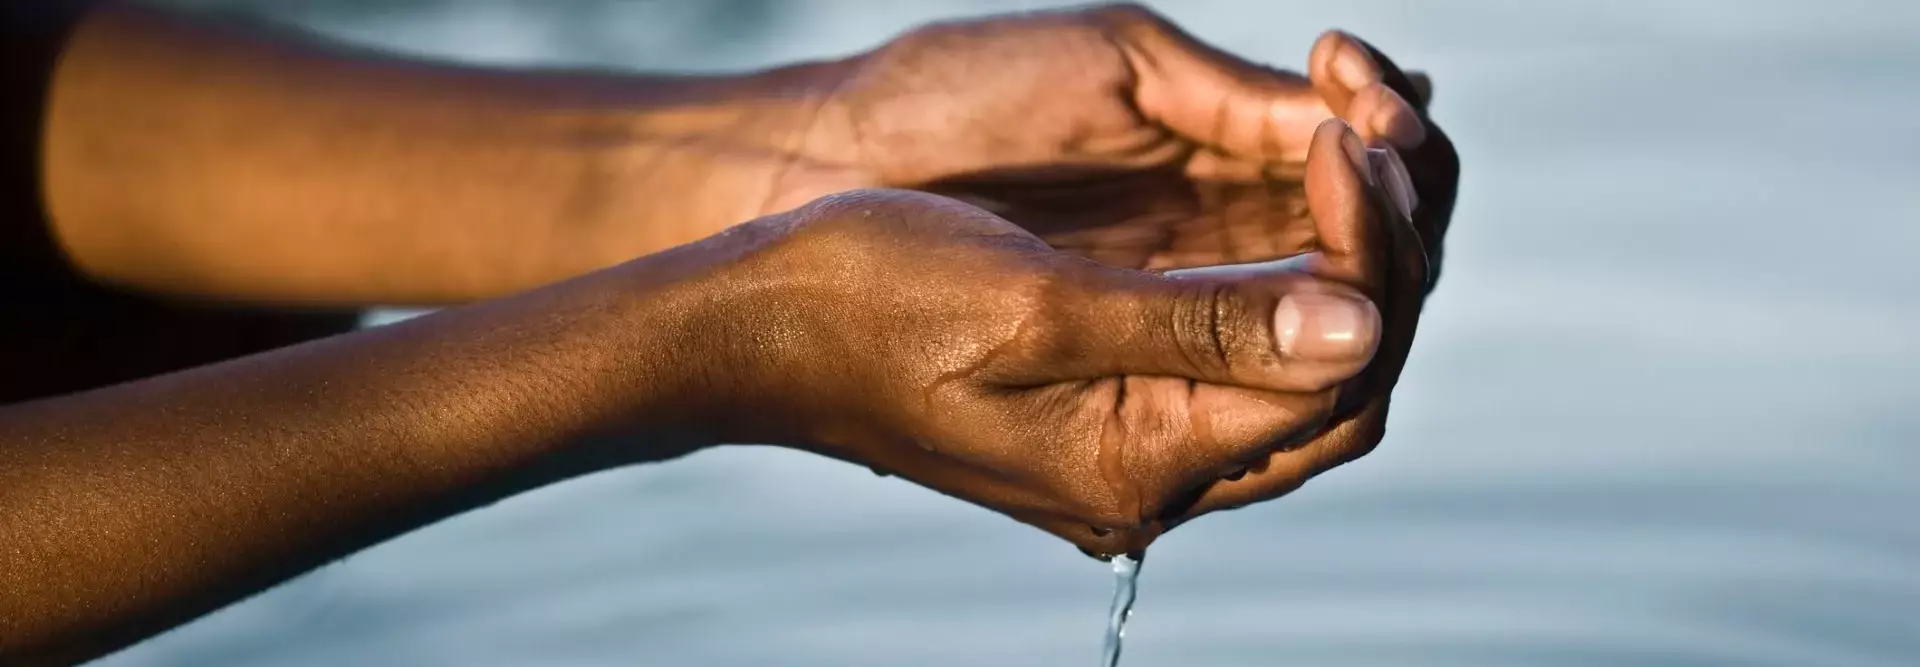 Mãos a segurar água de um rio